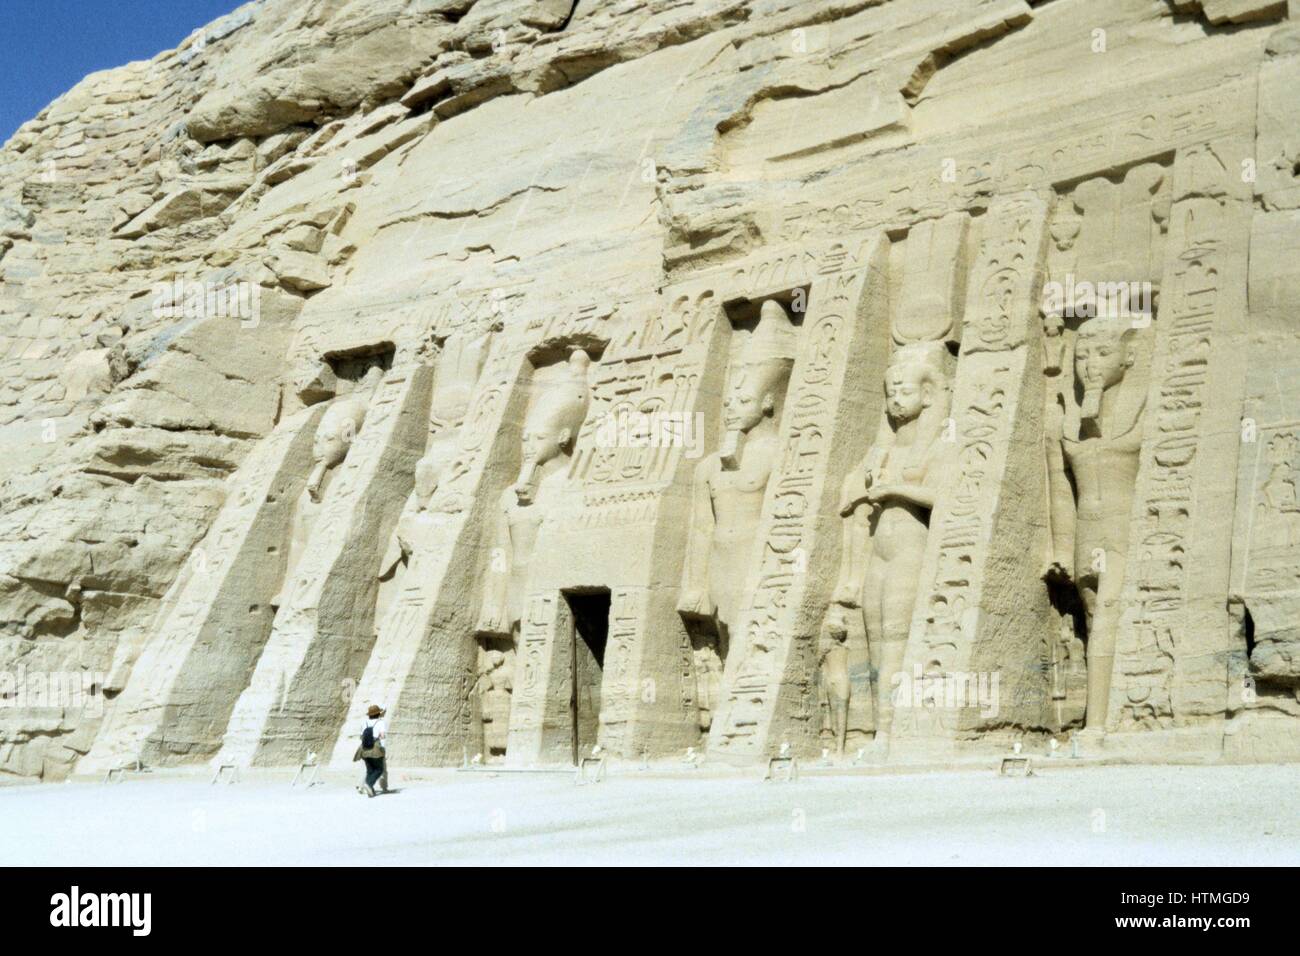 Tempel der Hathor, Abu Simbel, Assuan, Ägypten. Hathor war die Frau des alten ägyptischen Sonnengottes. Kleiner als der Tempel von Ramses II (1279-1213 v. Chr.) hat die Fassade Statuen von Ramses Frau Nefertari, flankiert von Statuen von Ramses. Stockfoto